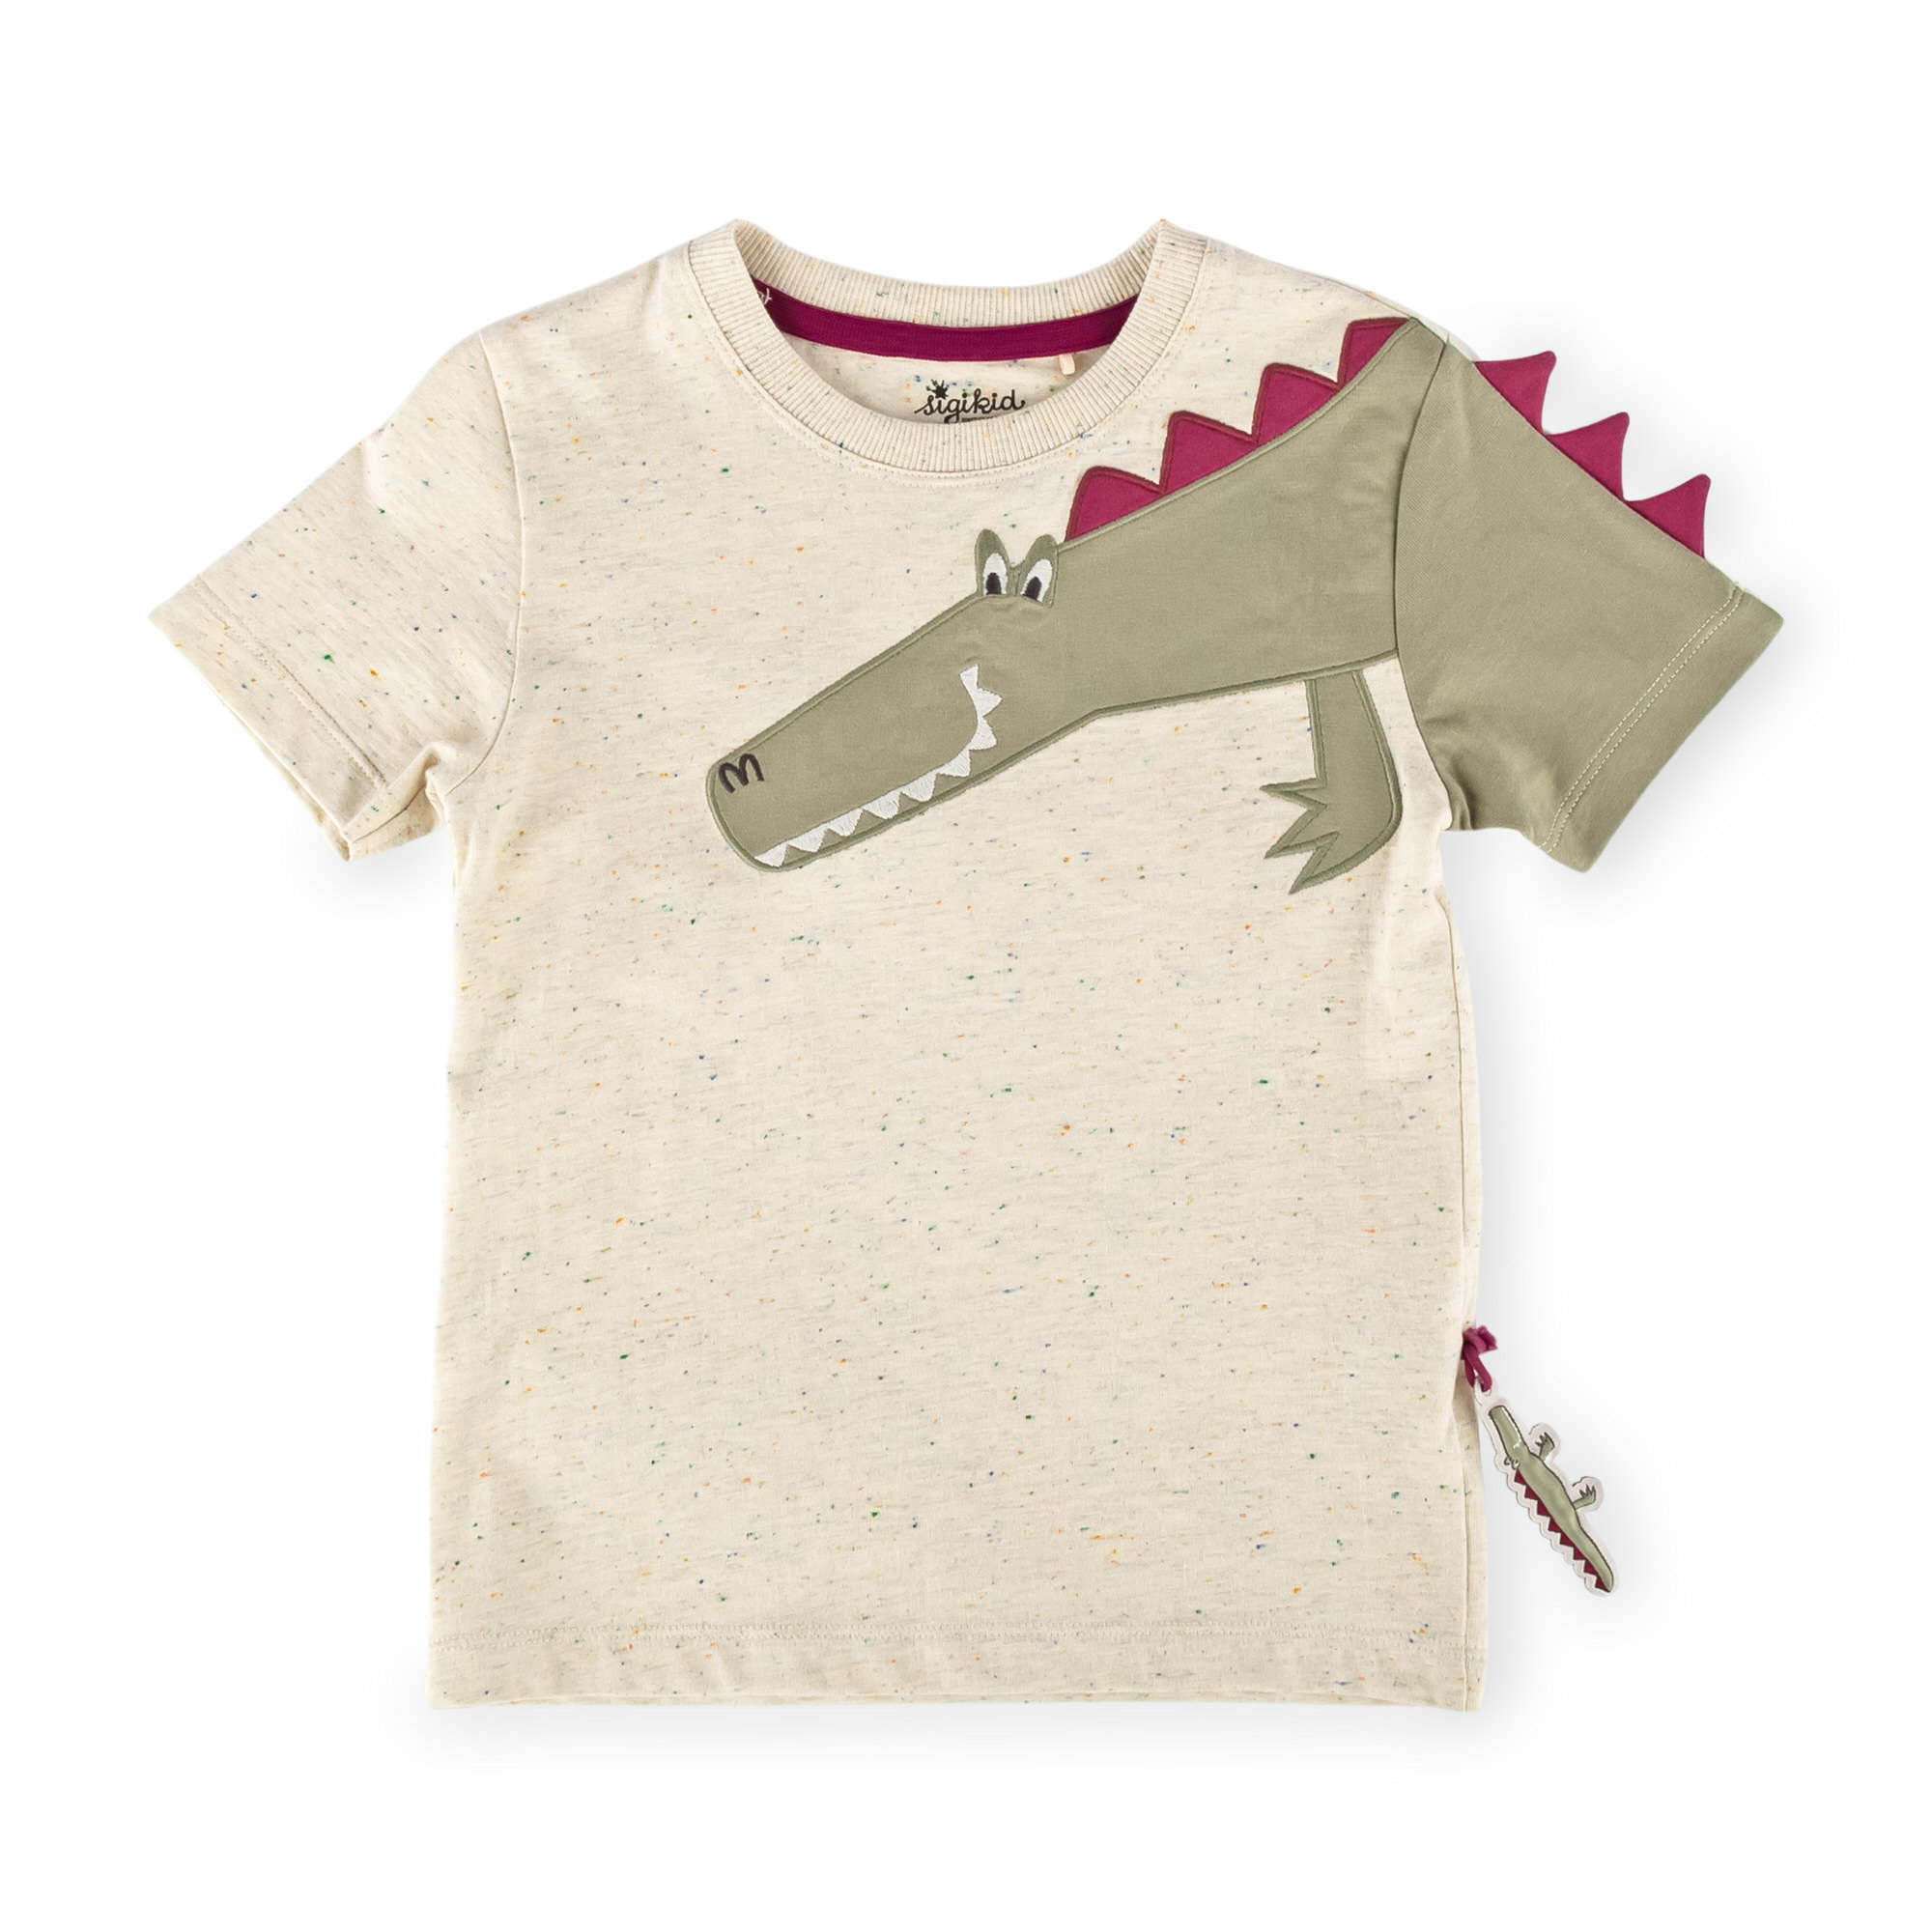 Kinder T-Shirt mit Krokodil Motiv